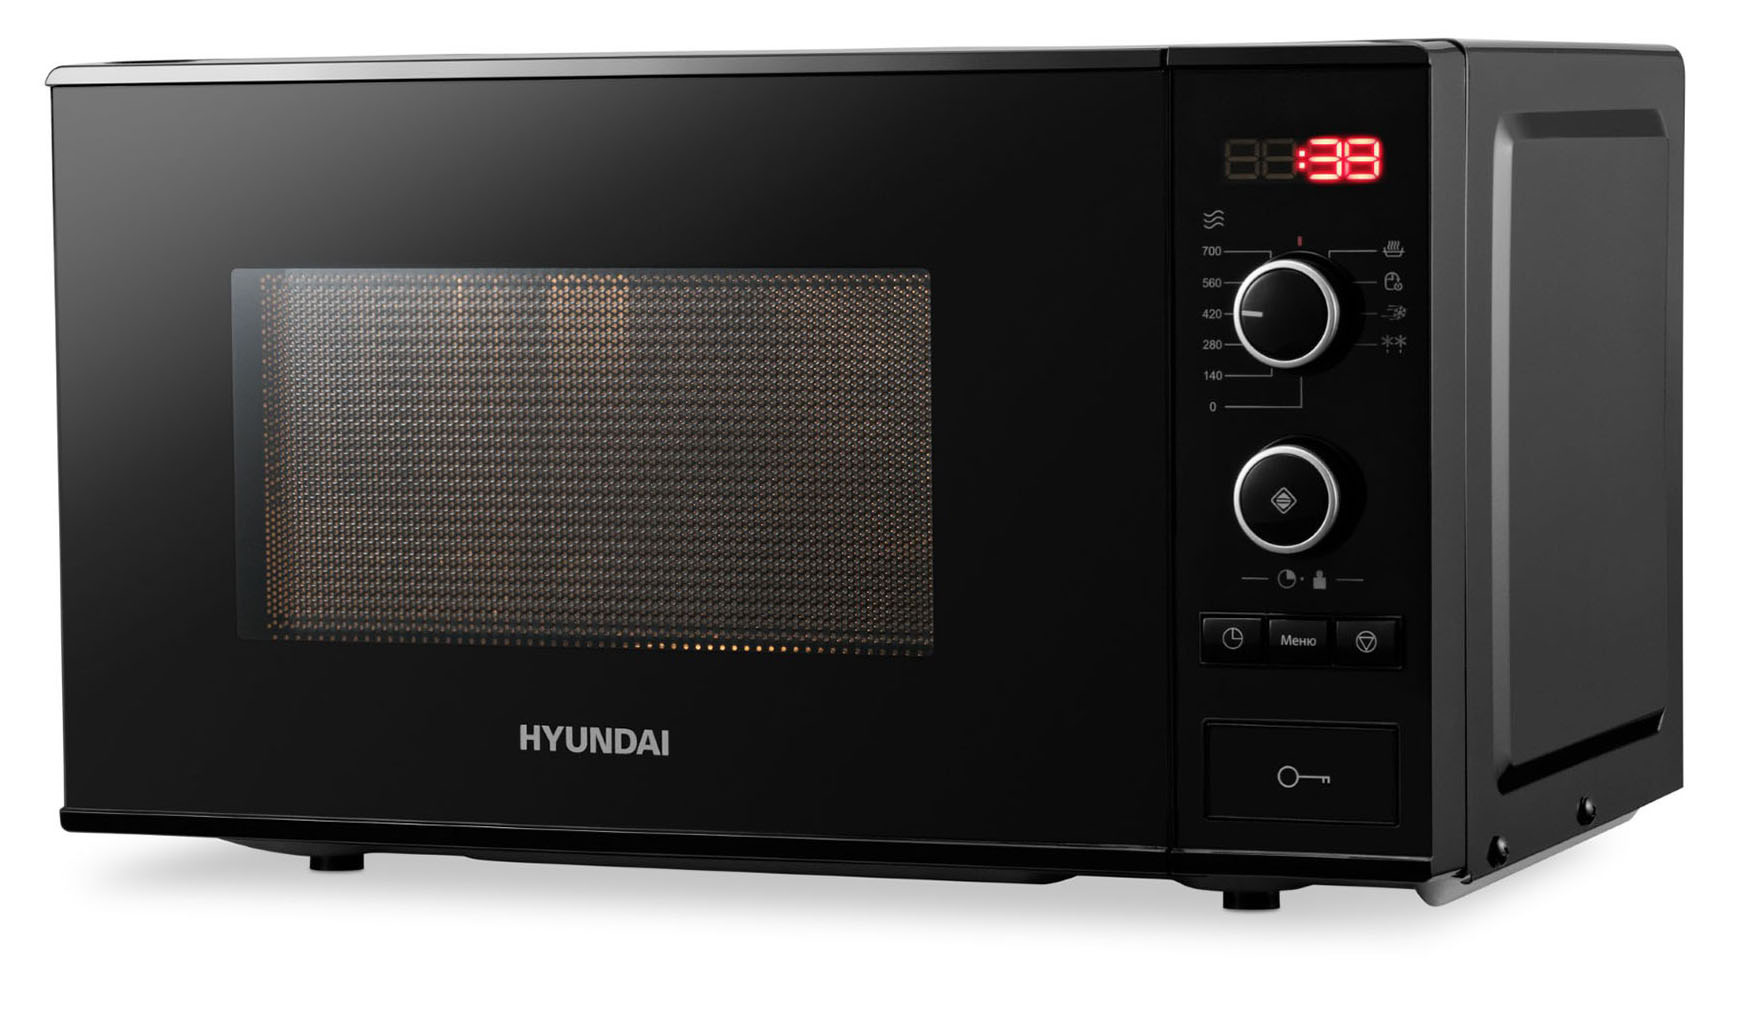 Микроволновая печь соло HYUNDAI HYM-D3032 черный микроволновая печь свч hyundai hym m2061 20л 700вт